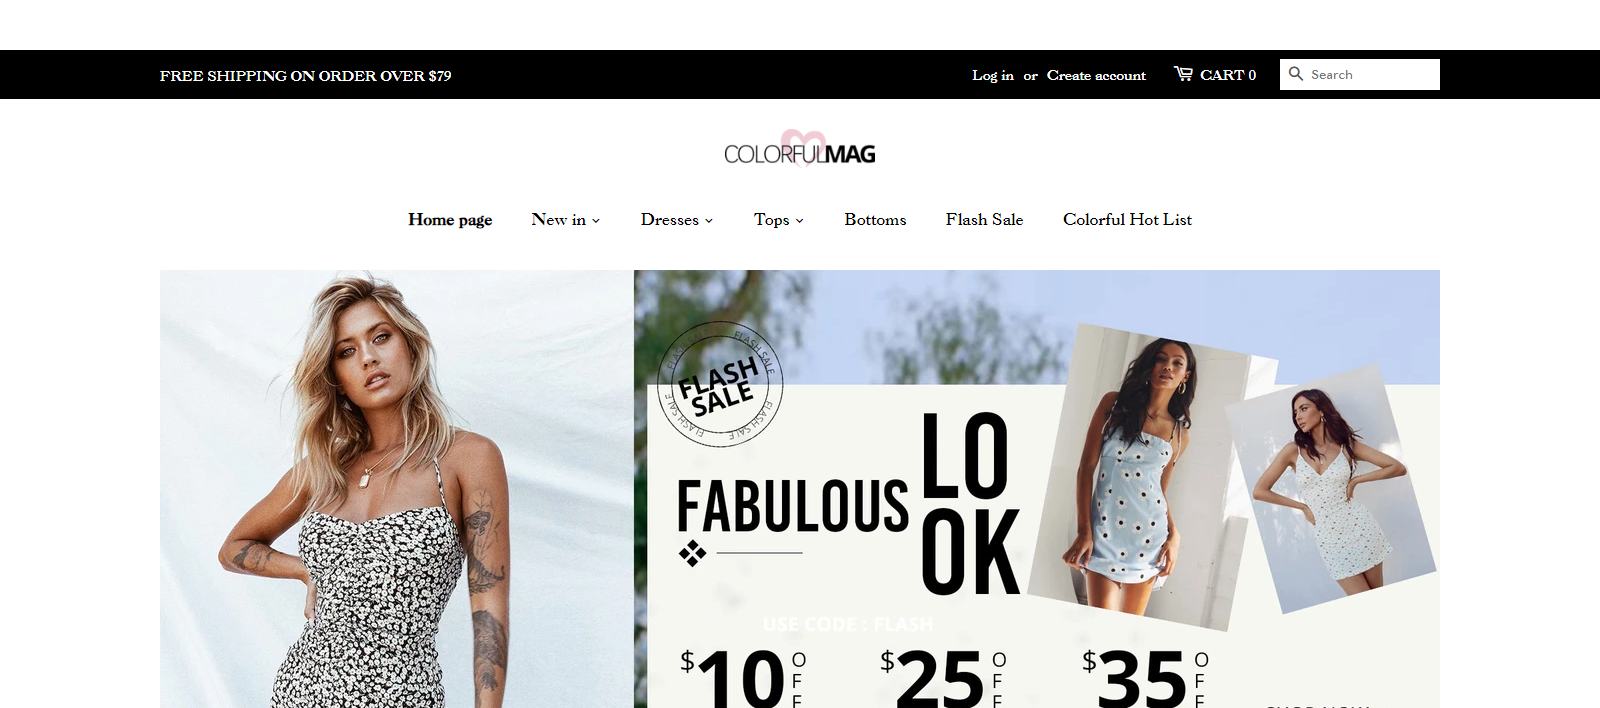 Colorfulmag Homepage Image